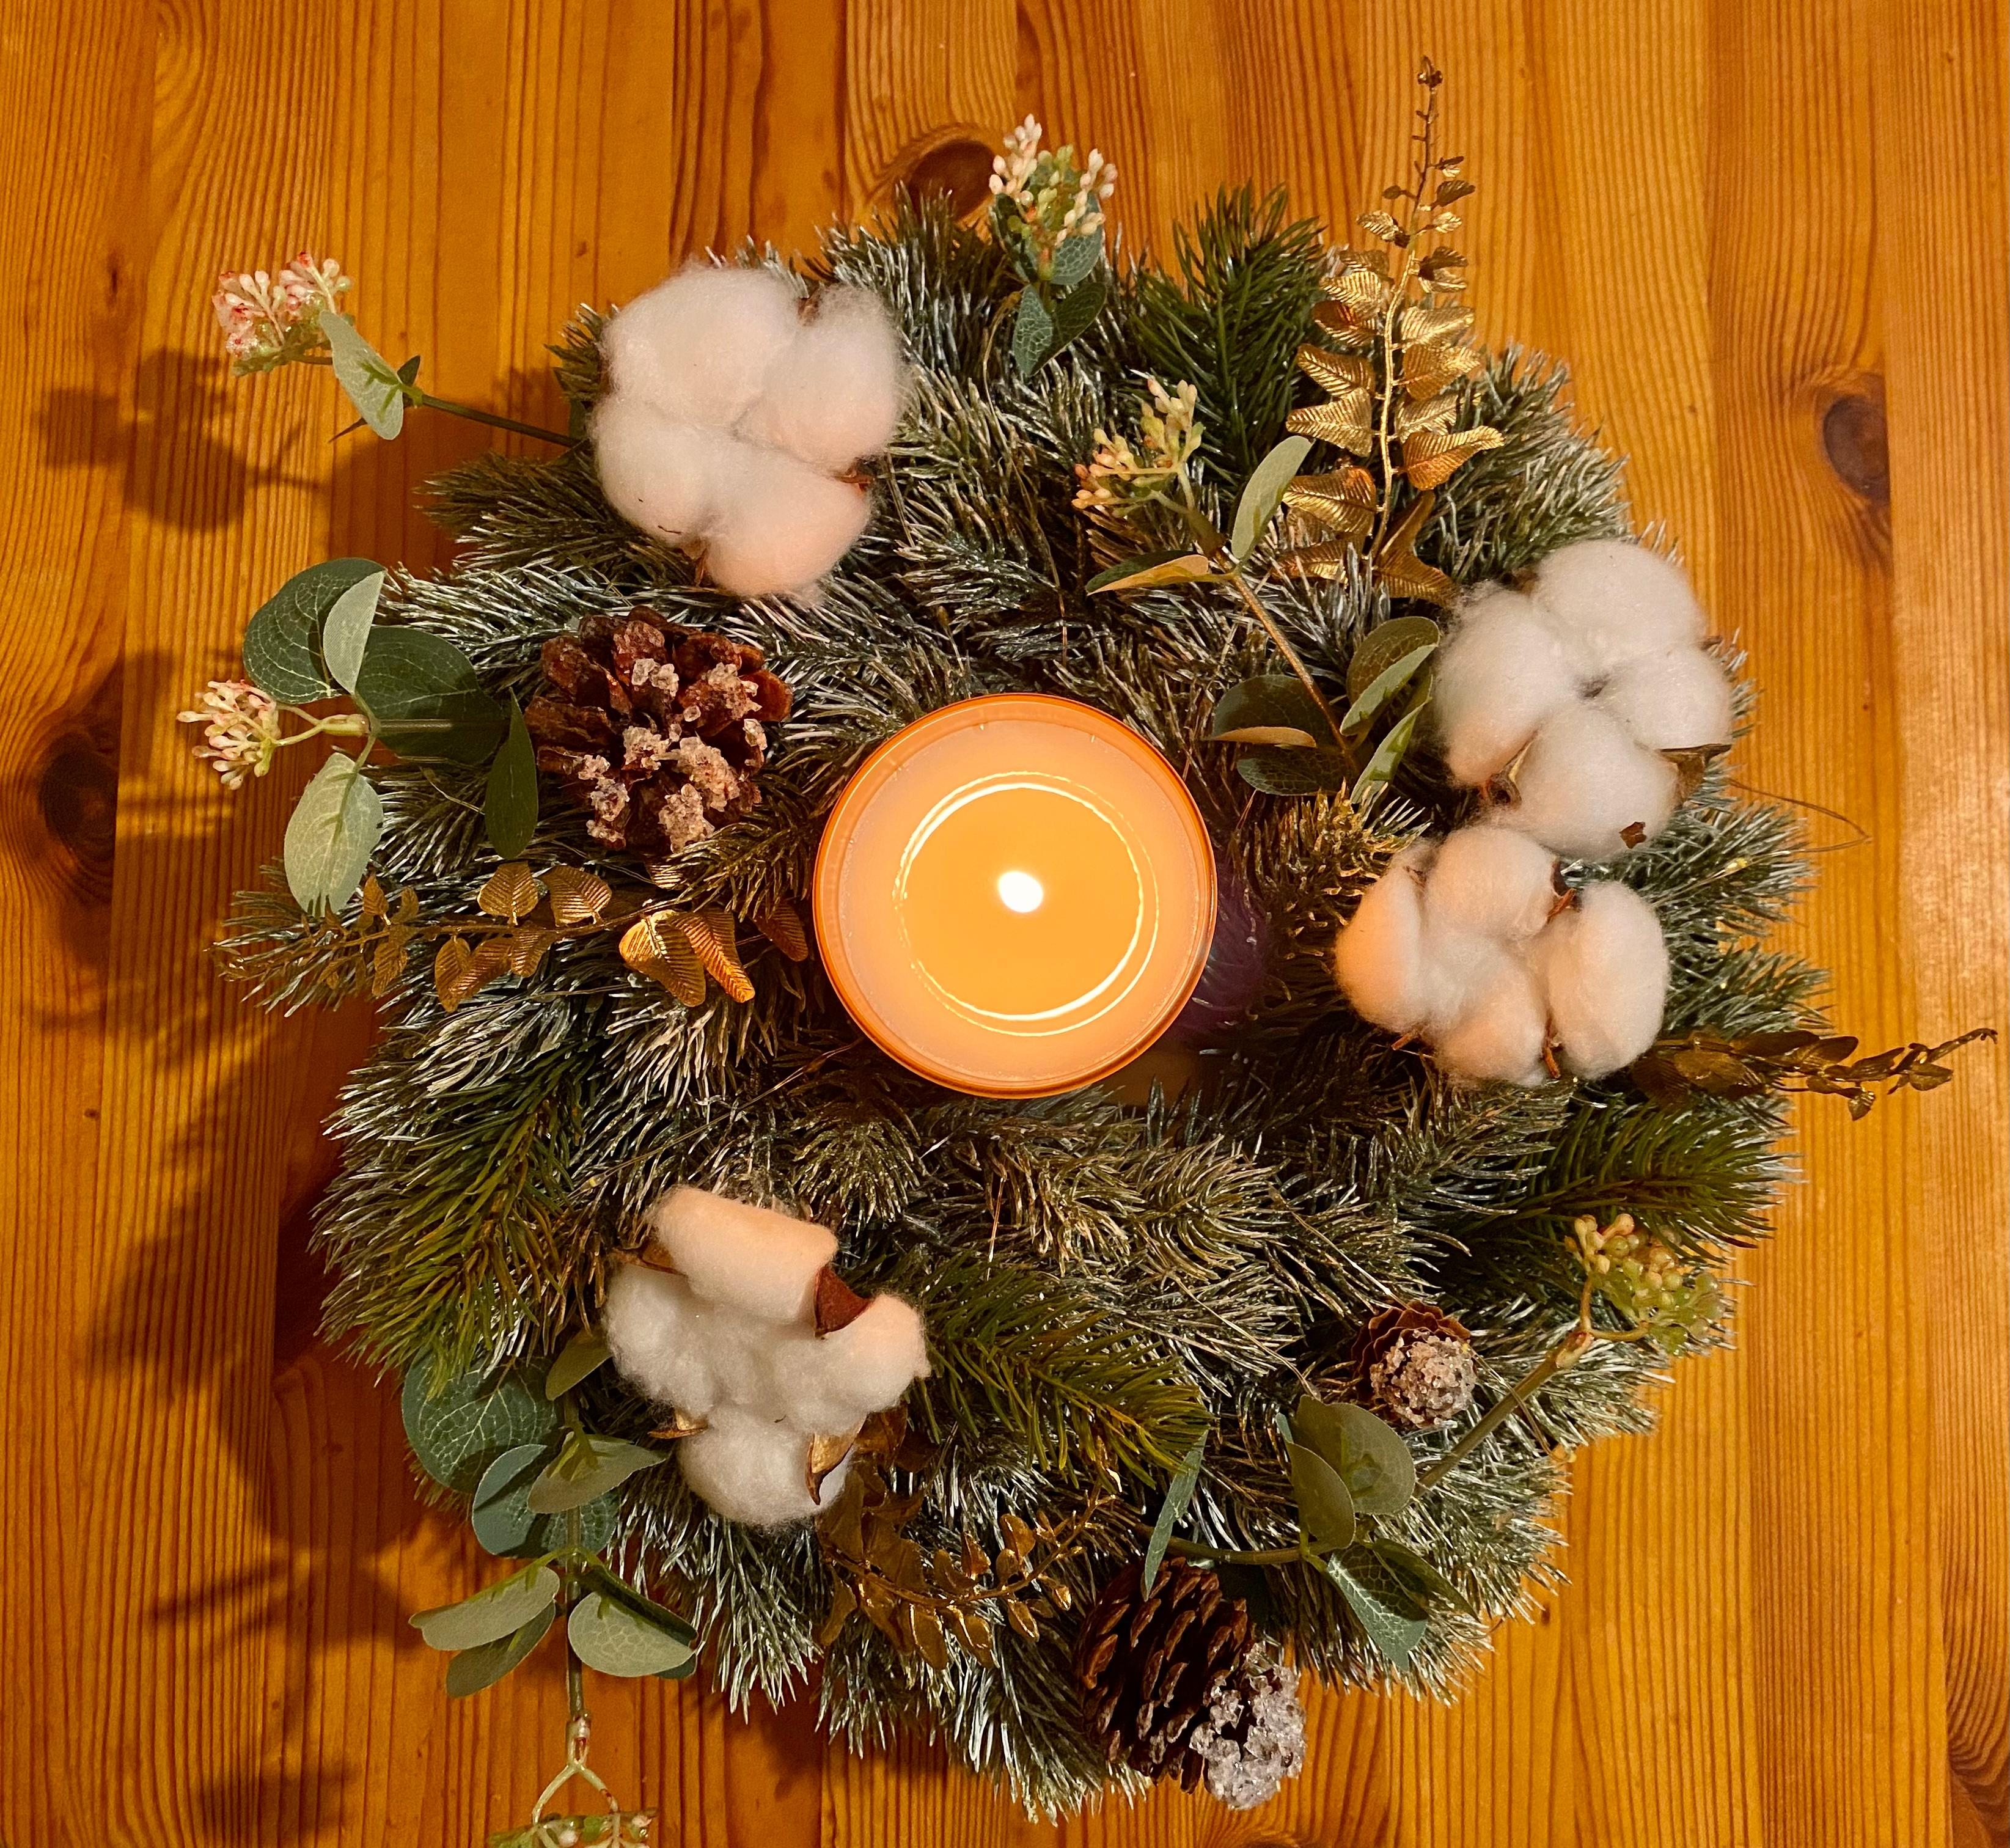 Schönen 2. Advent ihr Lieben #weihnachten #Kerzen #Kranz #skandi